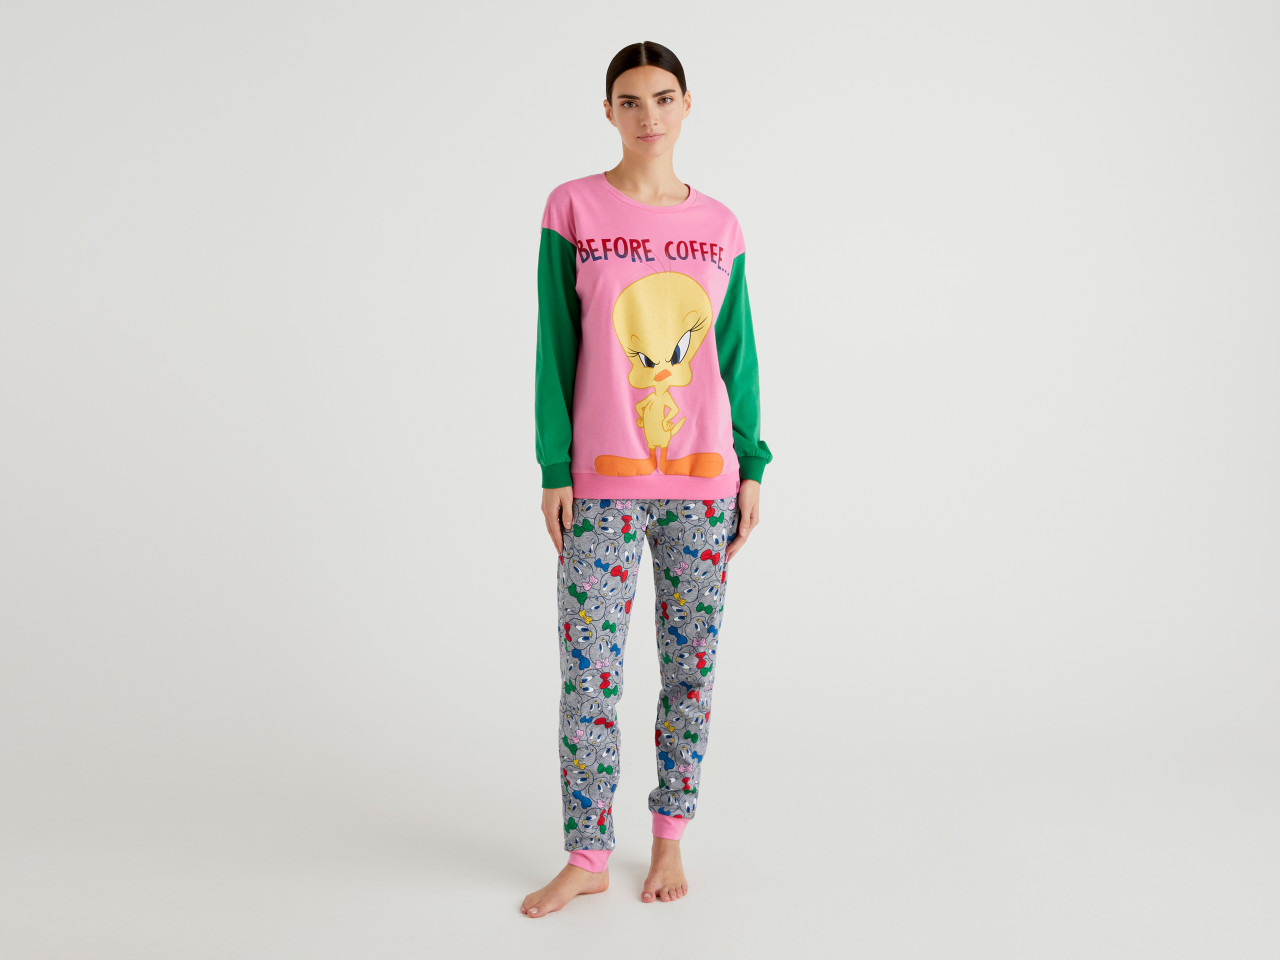 Benetton Girls Pink Pyjamas PJ's Set Kitten Print Cotton NEW Ex Benetton Age 2-12 Years 